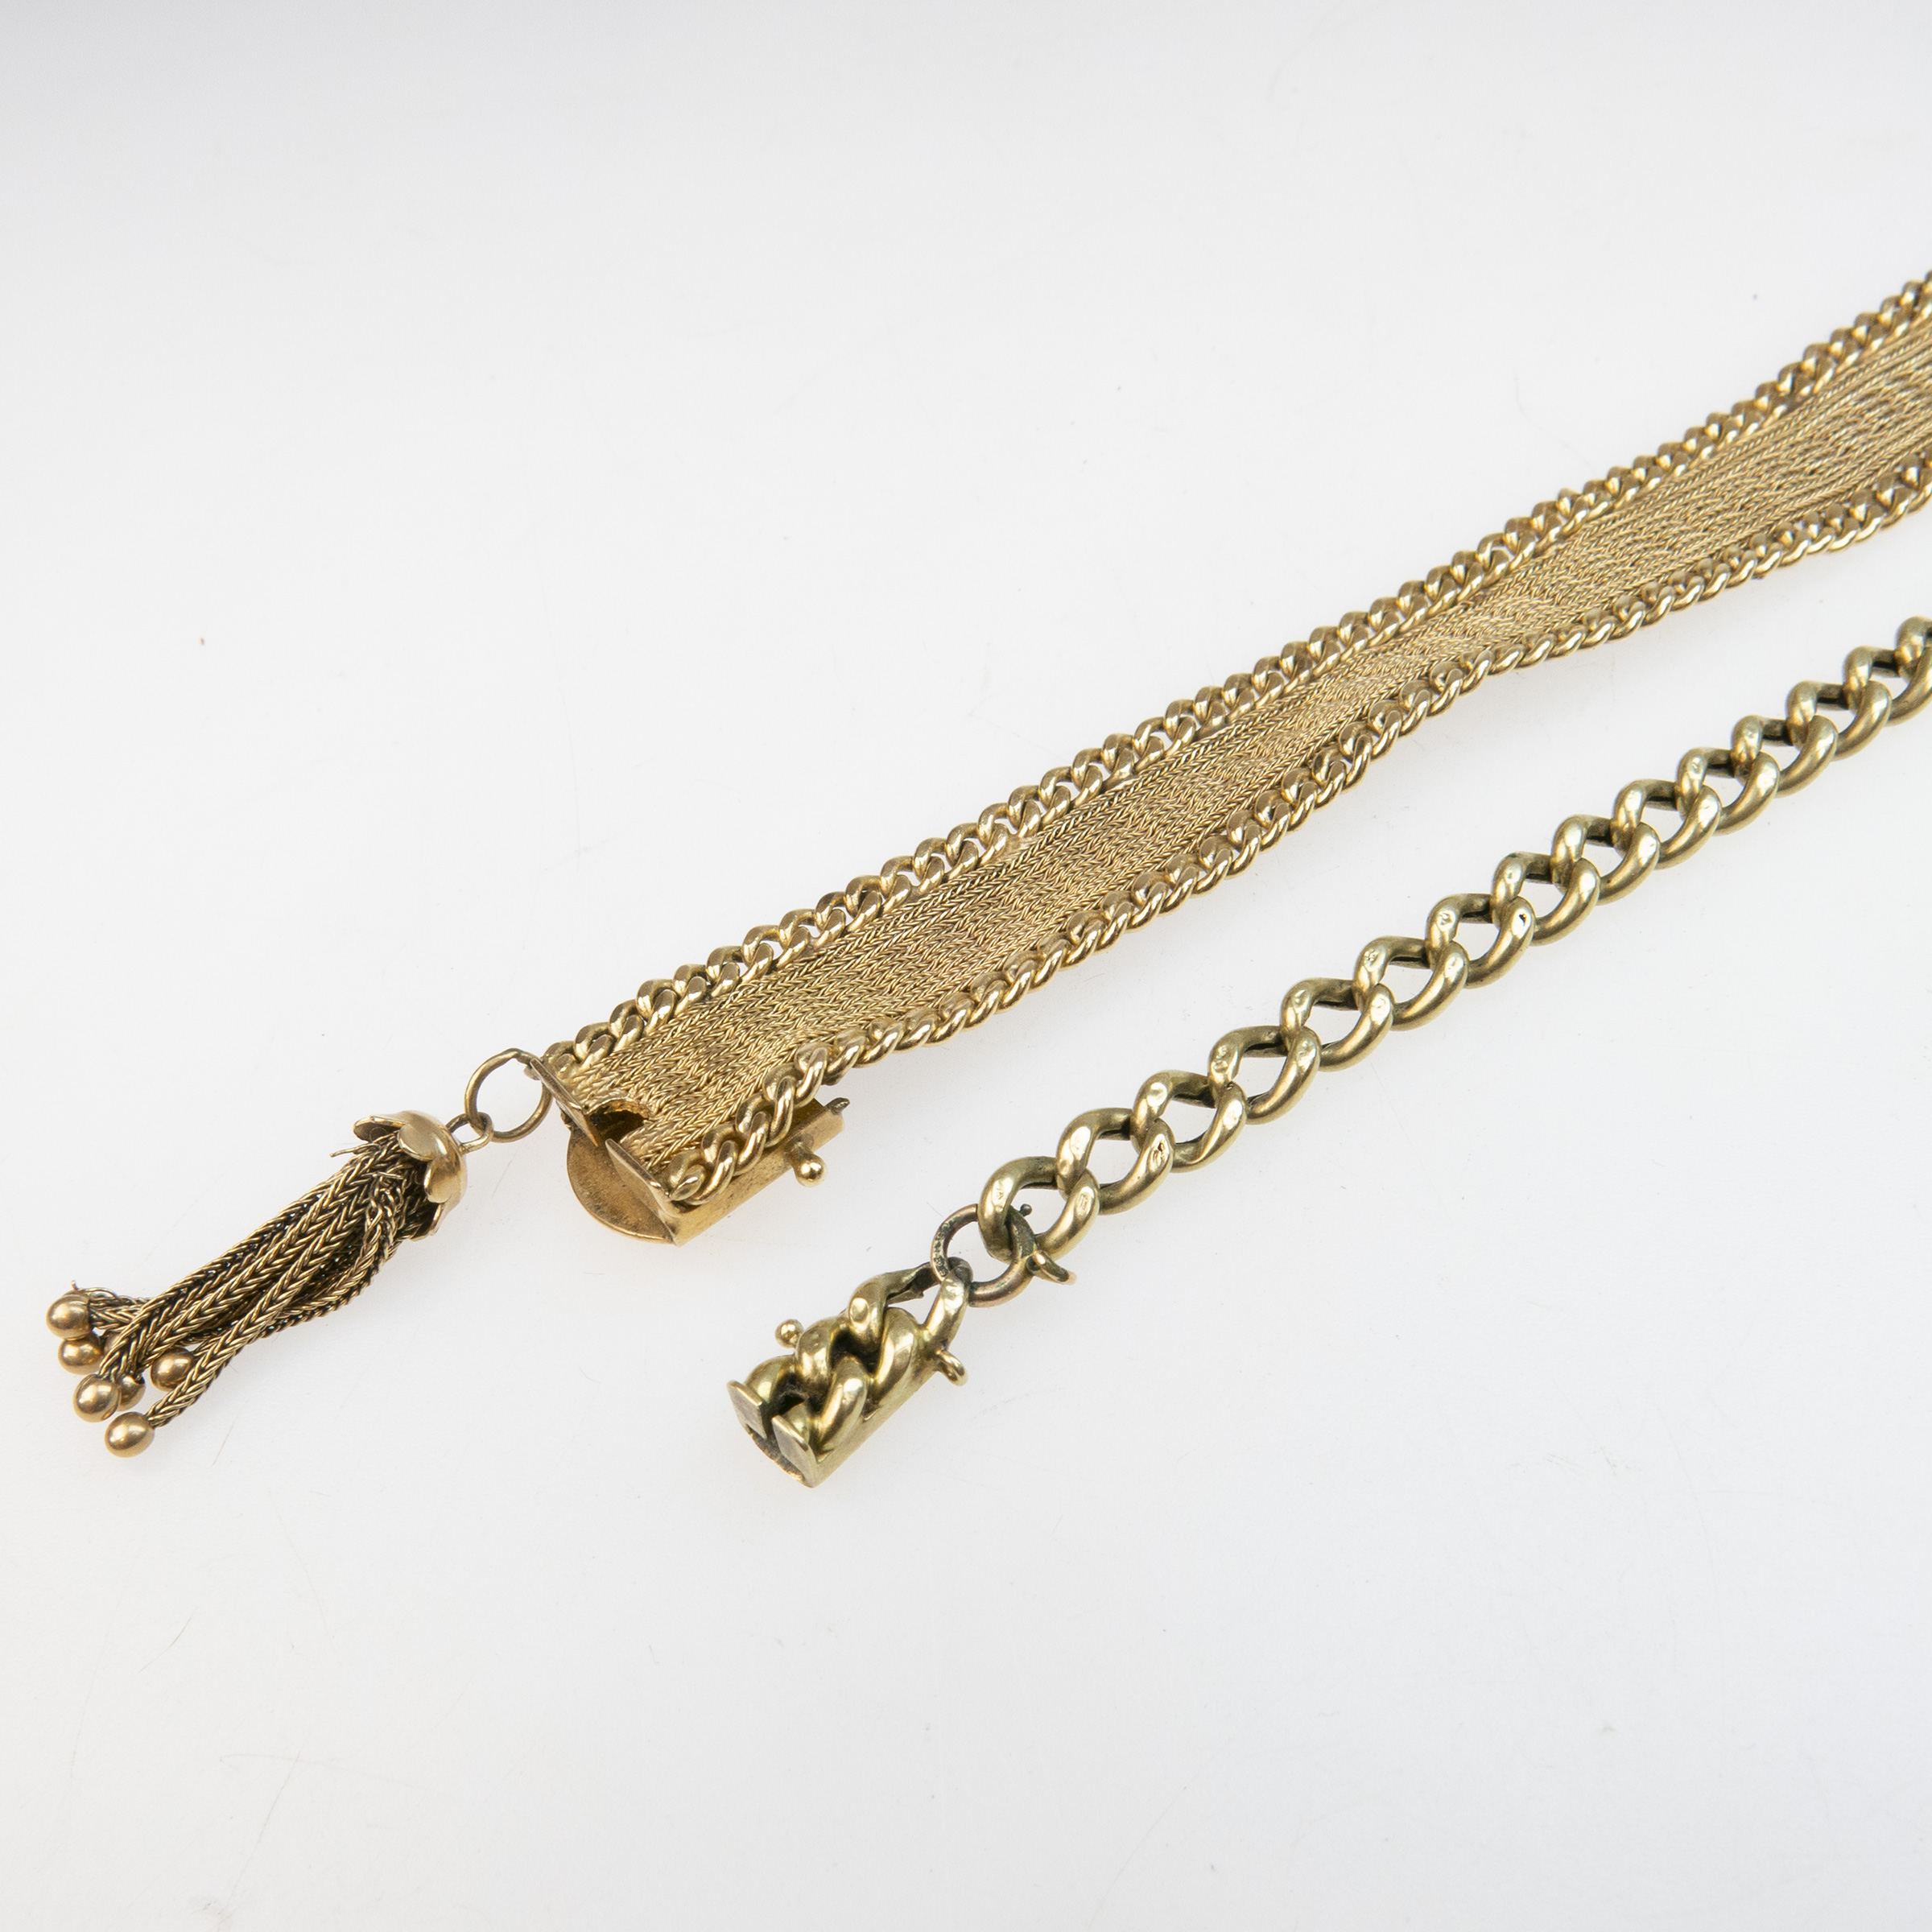 2 x 14k Yellow Gold Bracelets